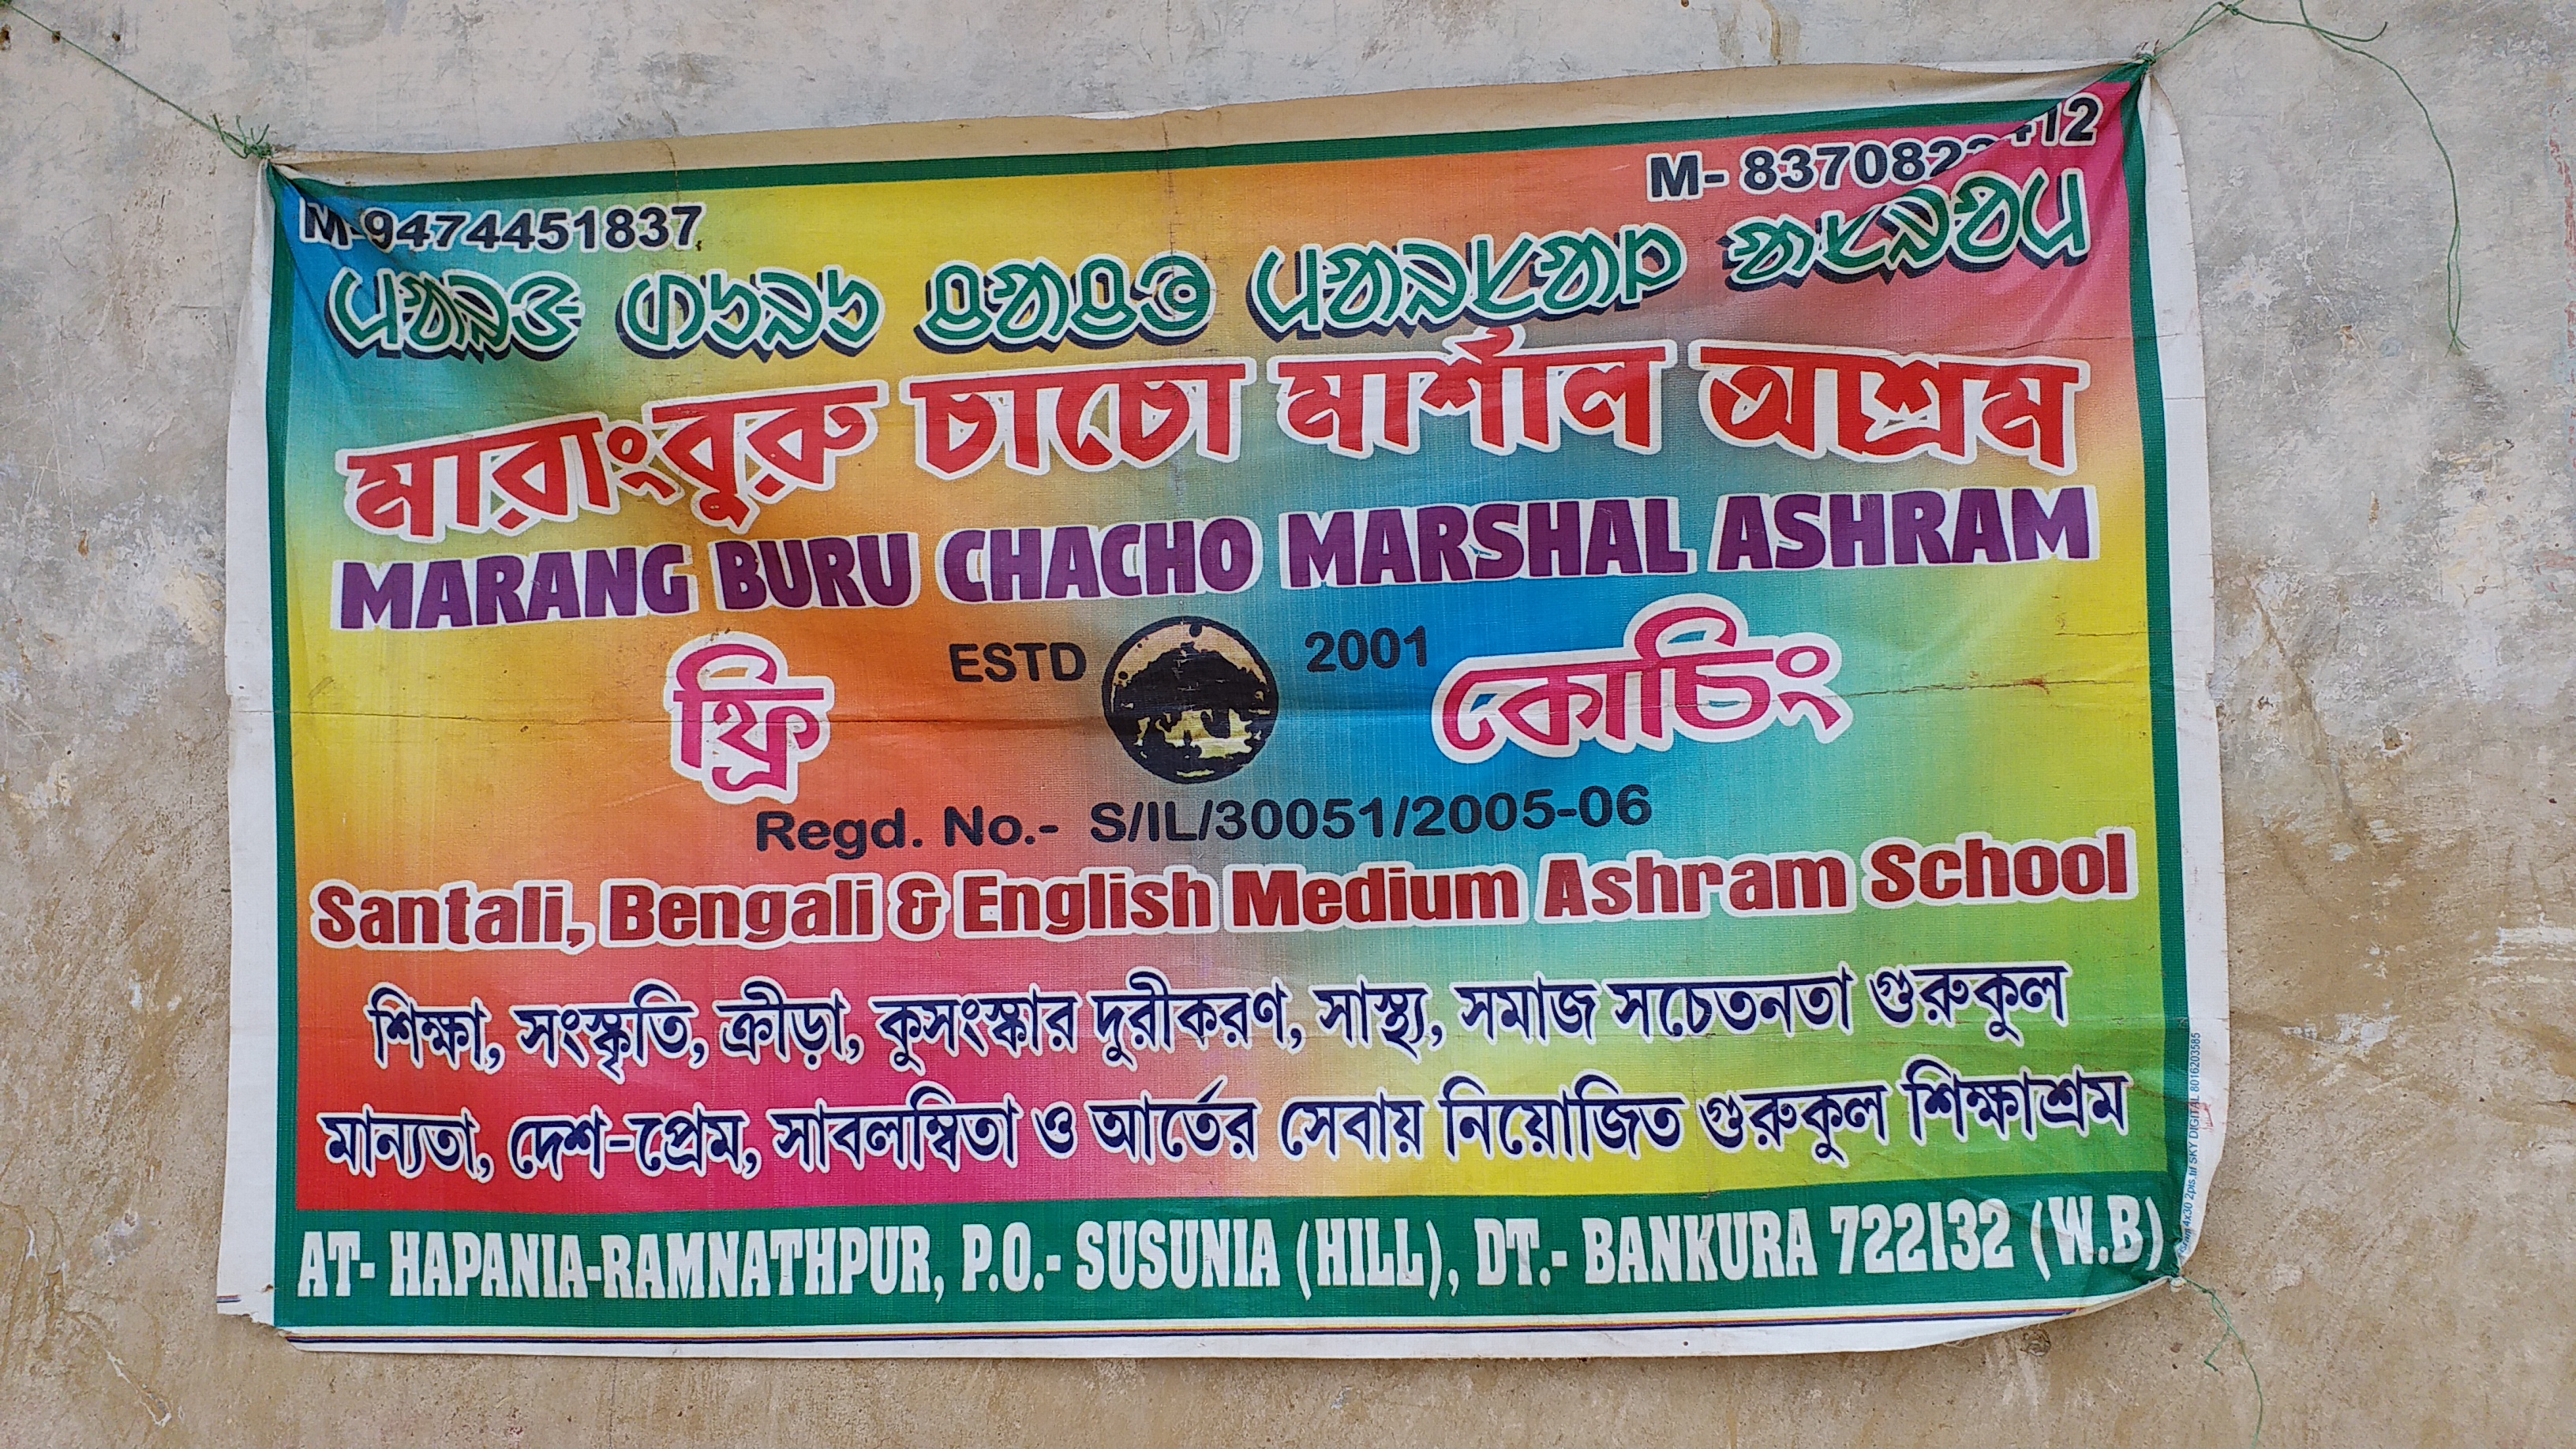 Marang Buru Chacho Marshal Ashram